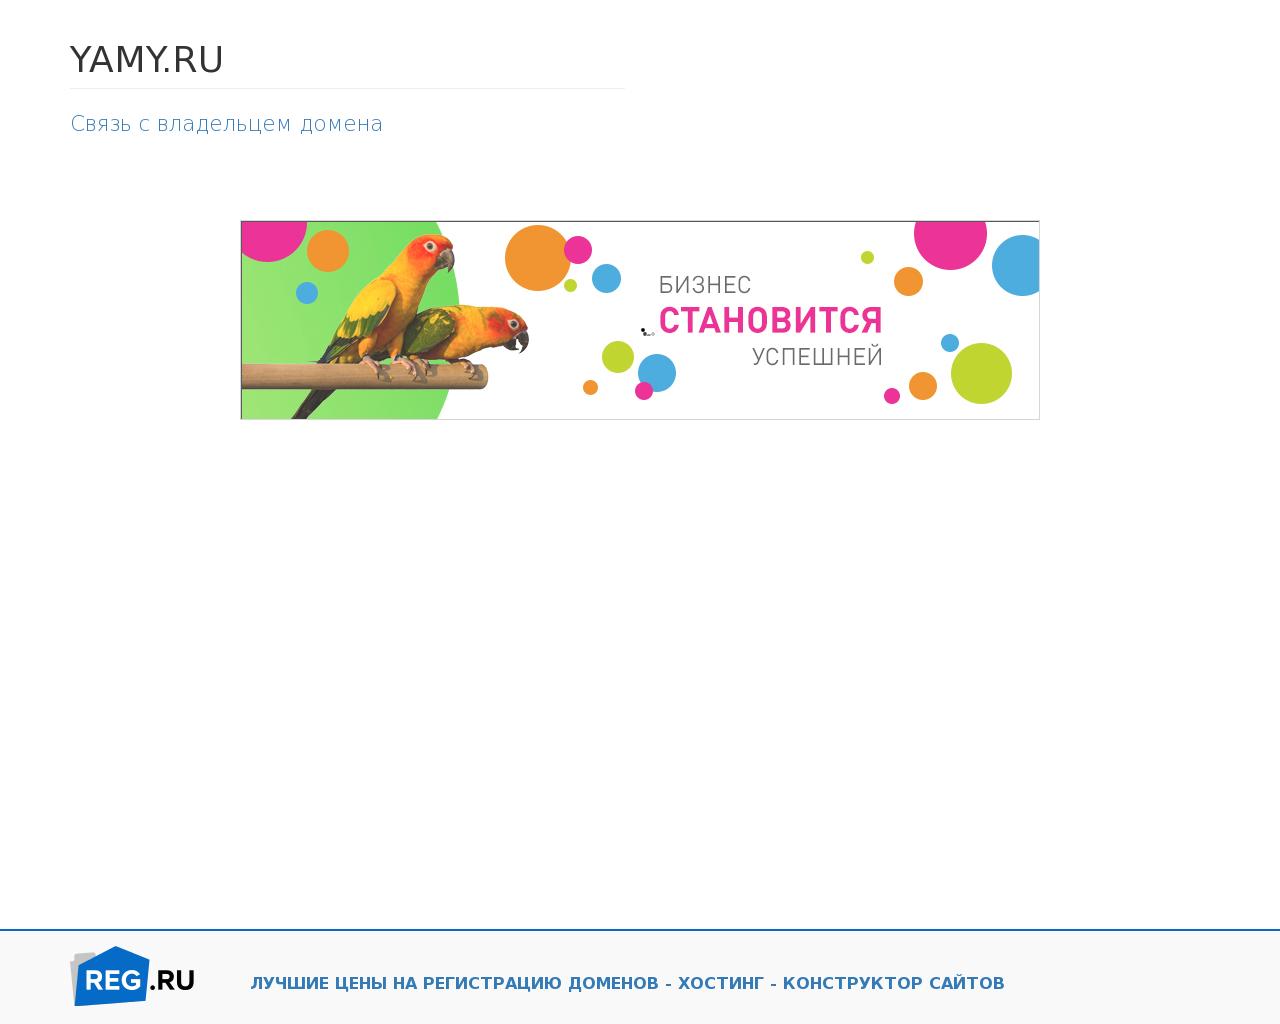 Изображение сайта yamy.ru в разрешении 1280x1024